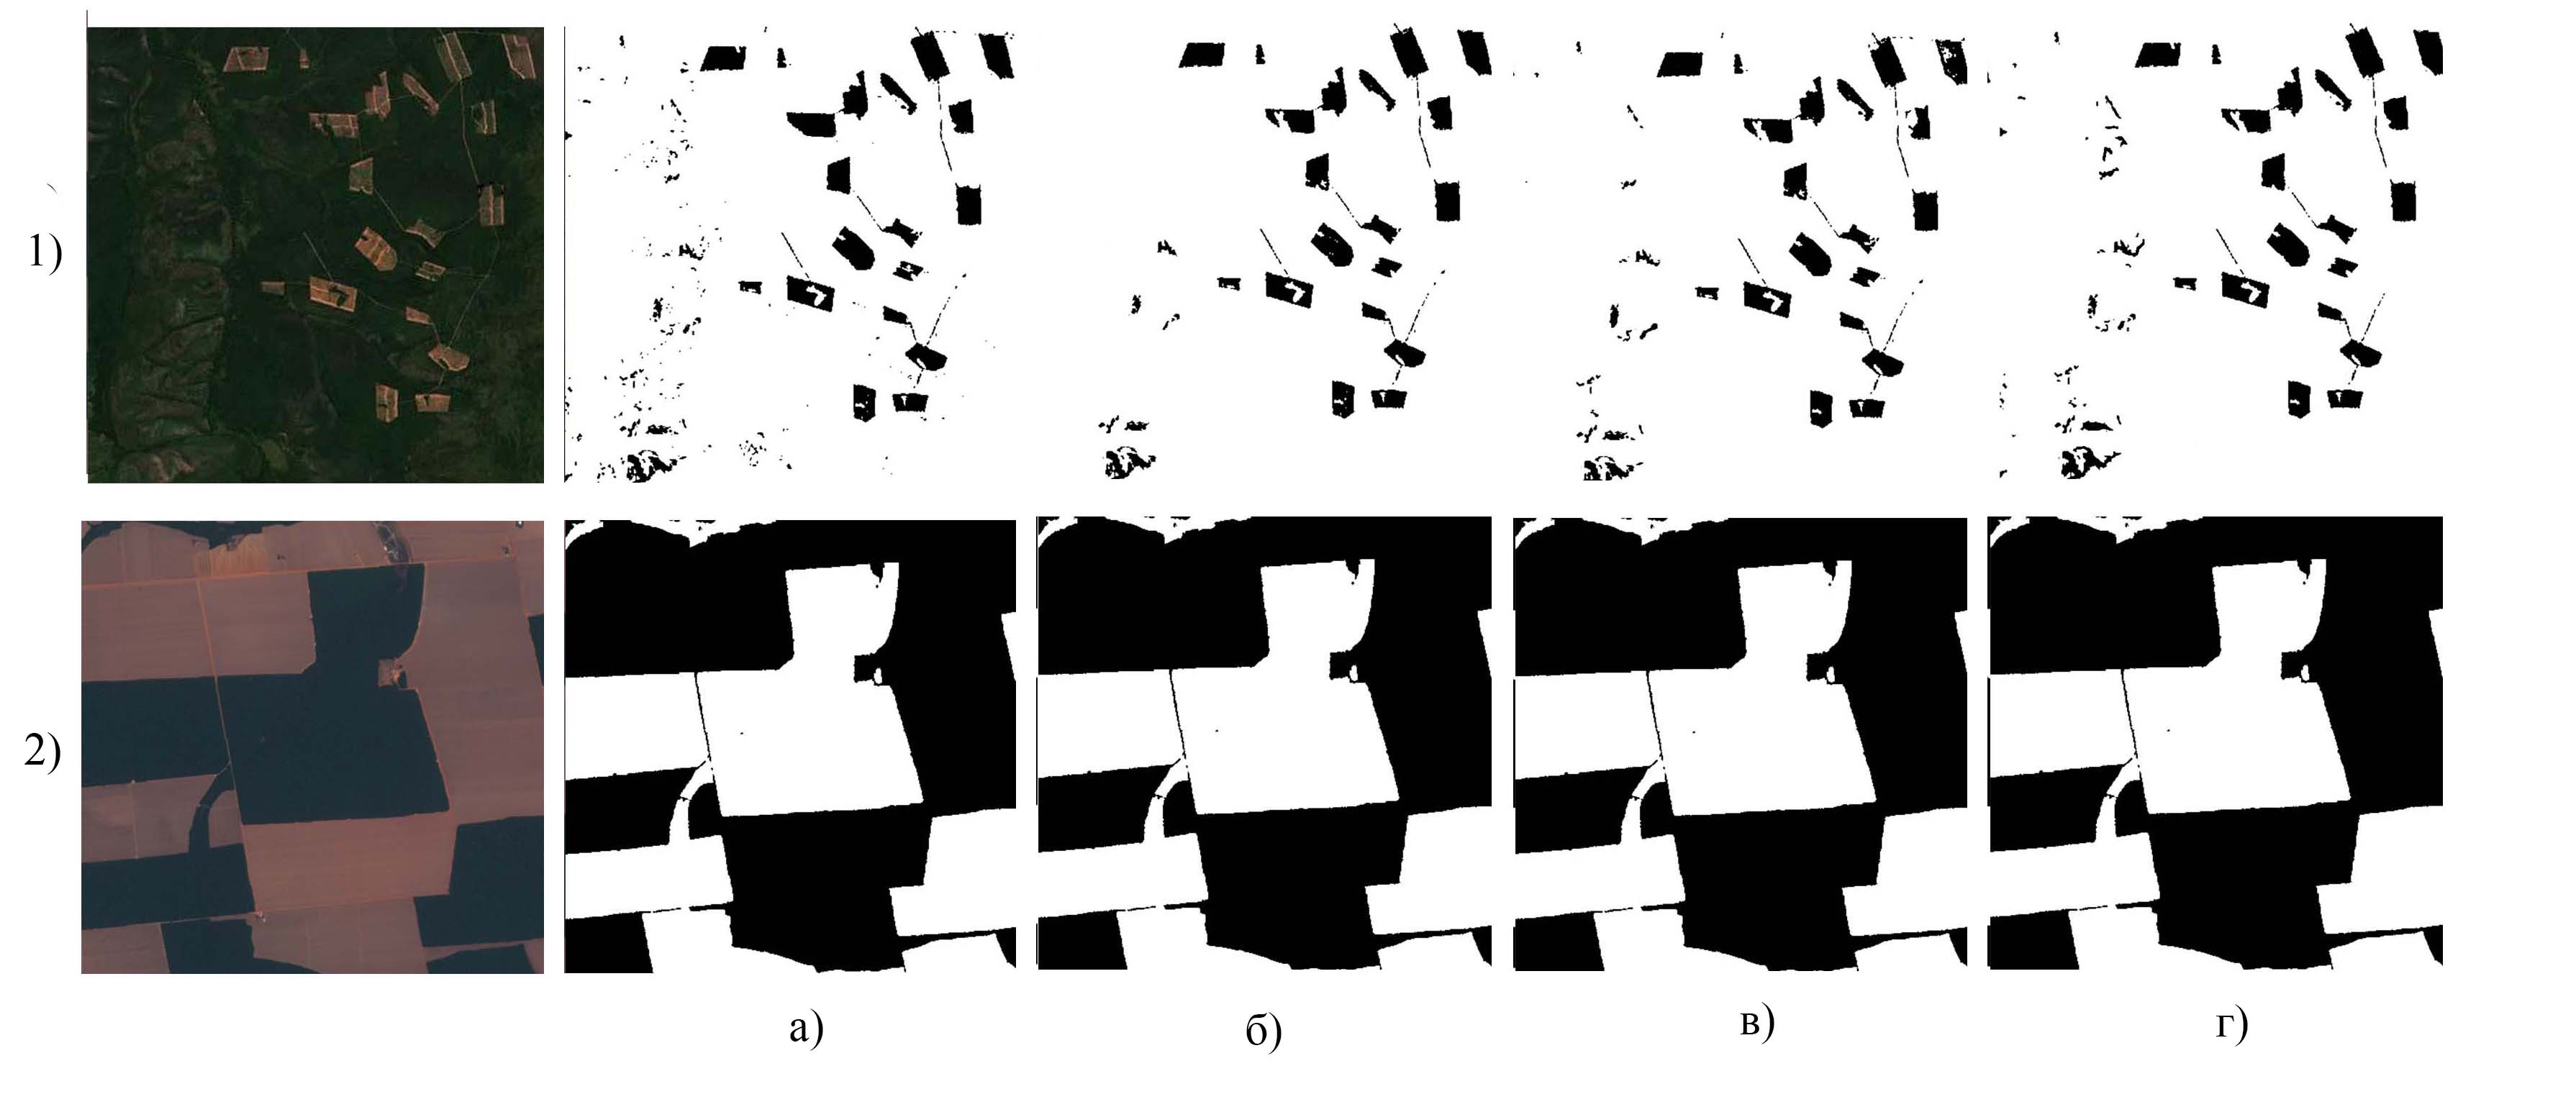 Результат работы различных алгоритмов семантической сегментации рубок по данным спутниковых снимков:а) истинная маска рубки; б) модель U-Net; в) модель Attention U-Net; г) модель MaskFormer